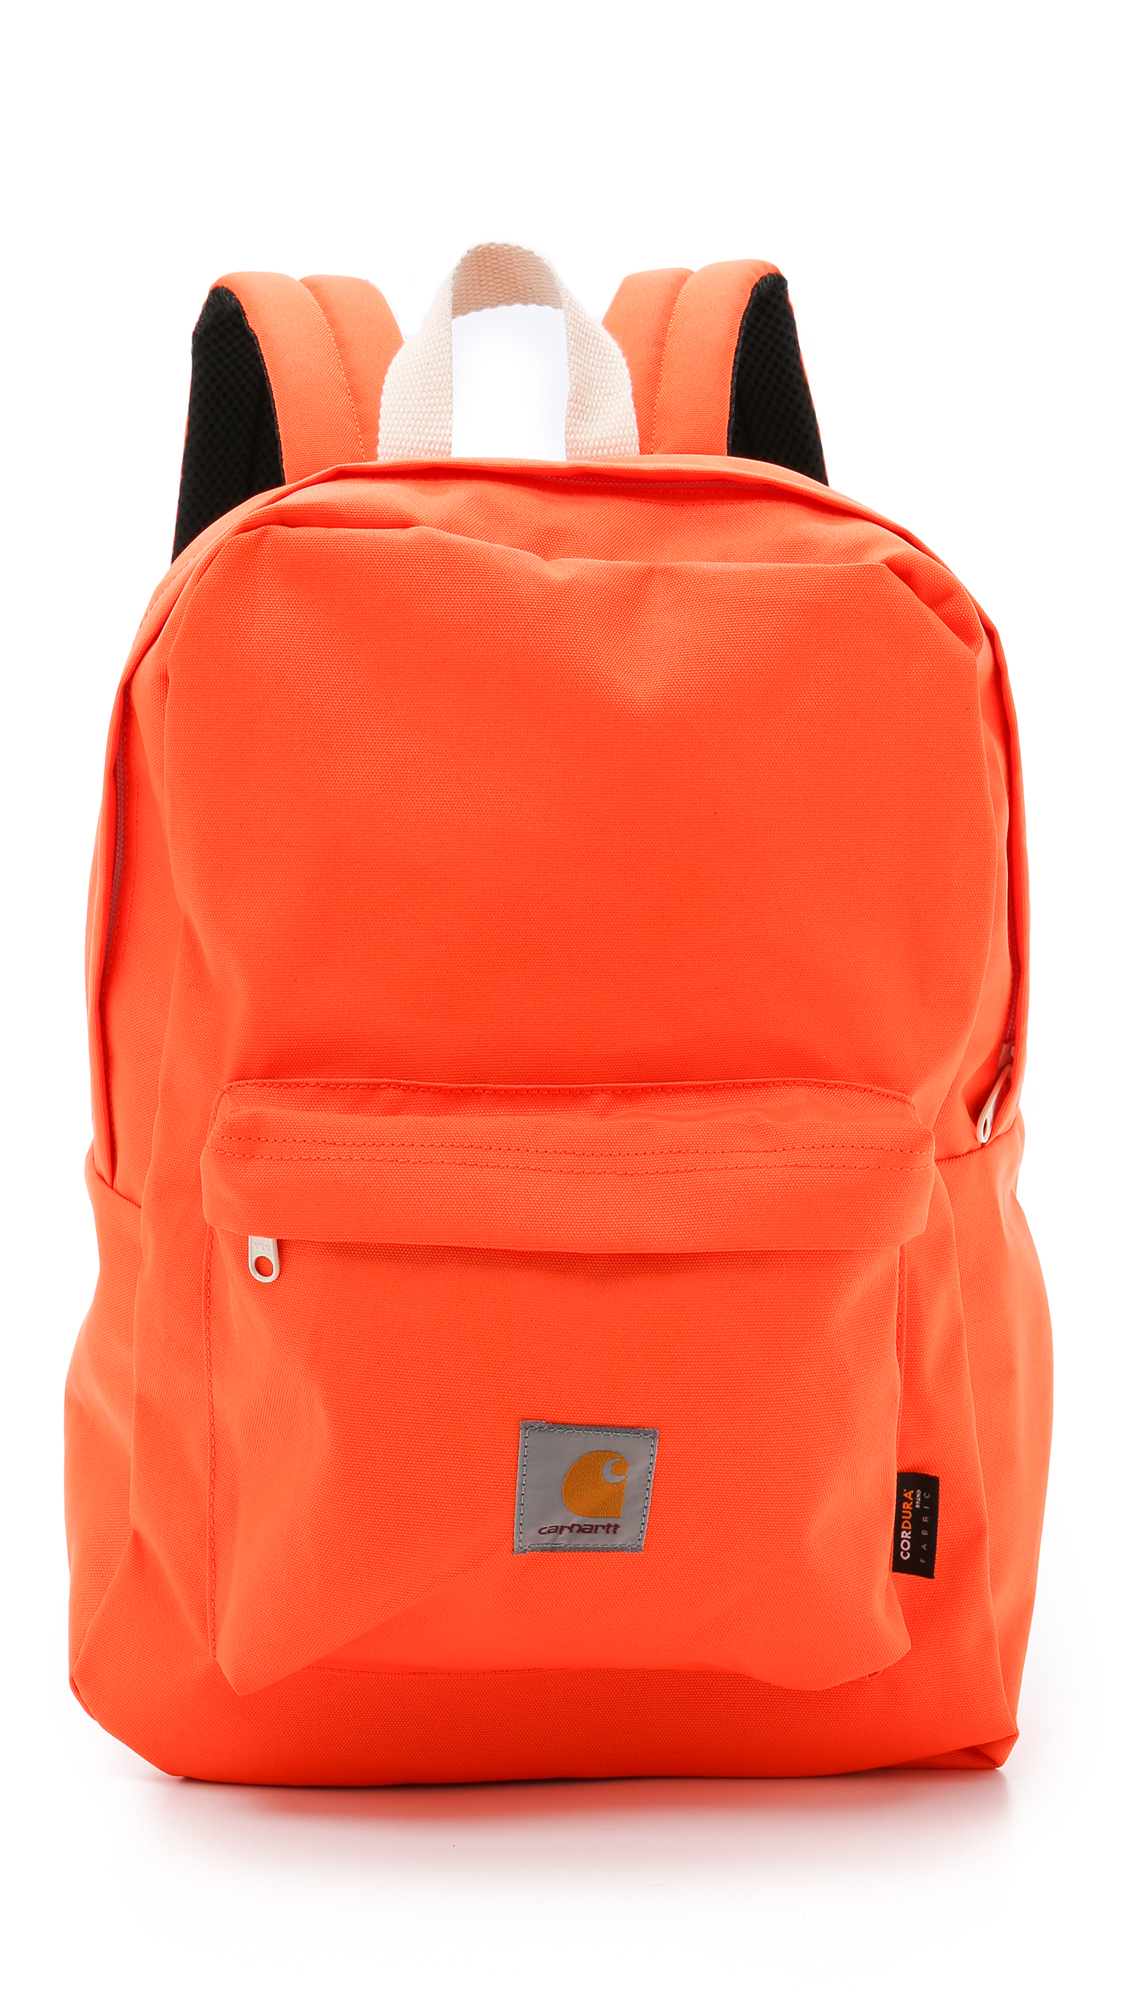 Lyst - Carhartt Wip Watch Backpack in Orange for Men